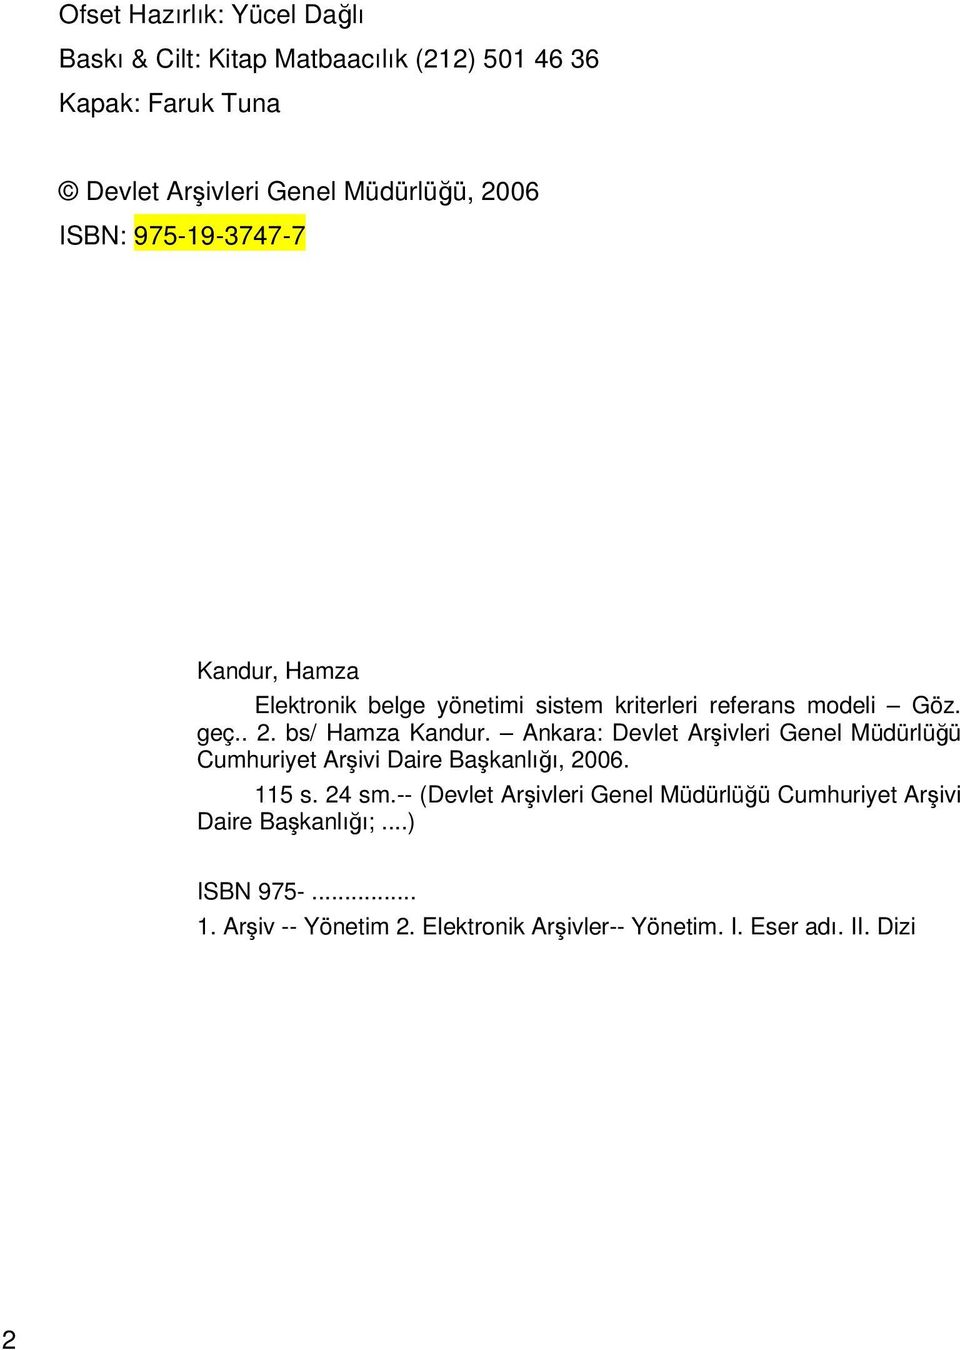 Ankara: Devlet Arşivleri Genel Müdürlüğü Cumhuriyet Arşivi Daire Başkanlığı, 2006. 115 s. 24 sm.